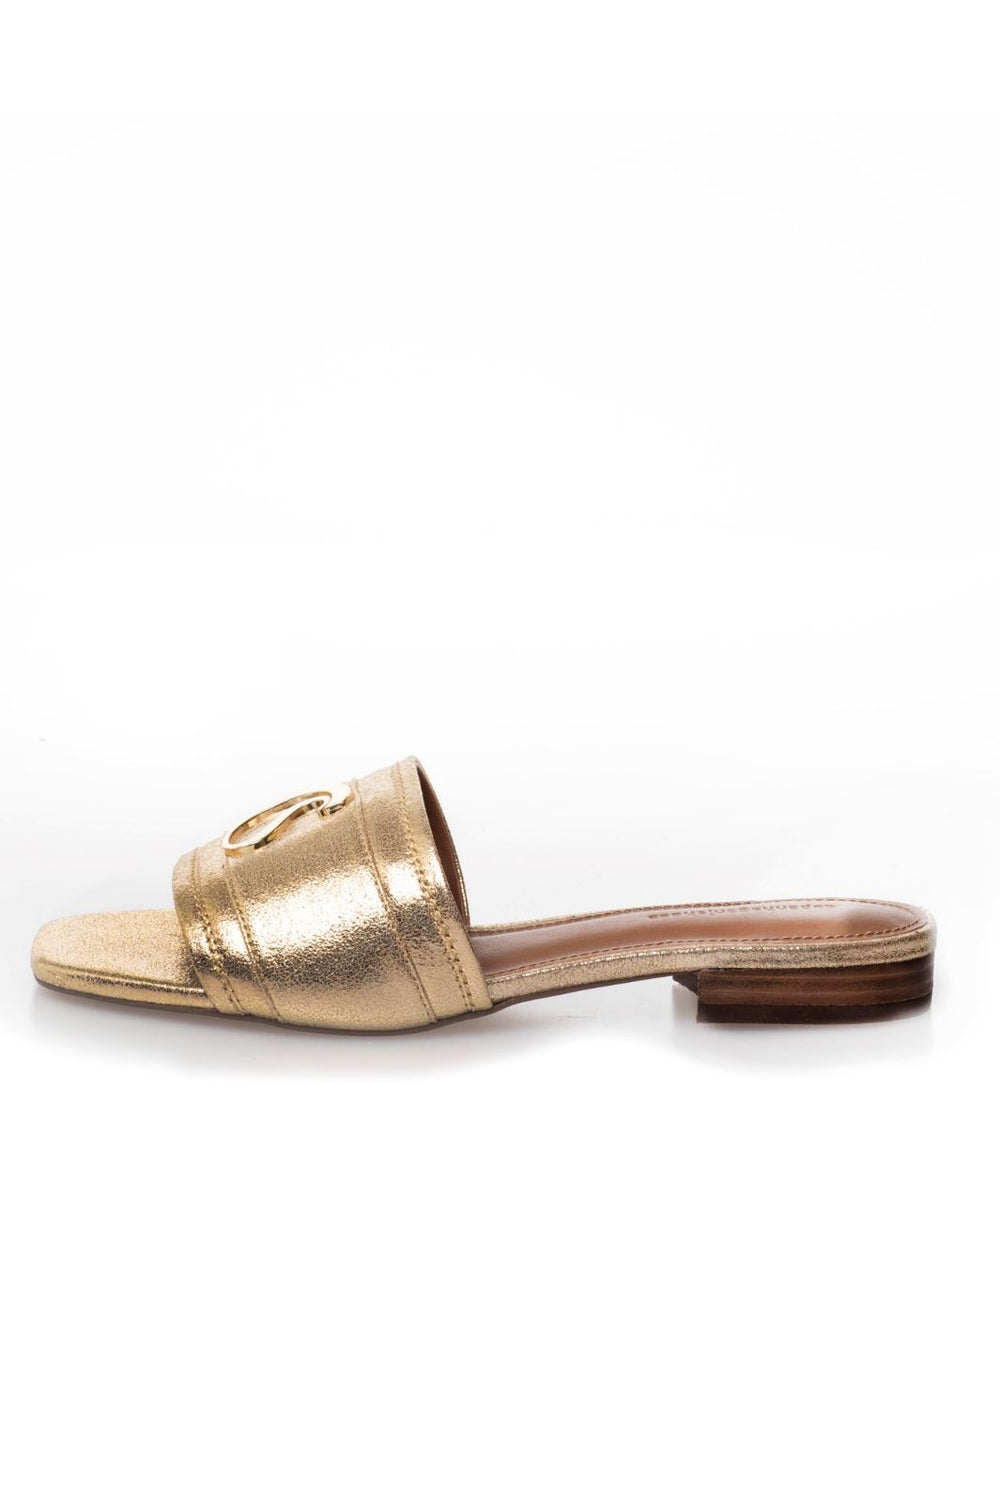 Forudbestilling - Copenhagen Shoes - Dressed Up Gold - 0051 Gold - (Marts/April) Sandaler 